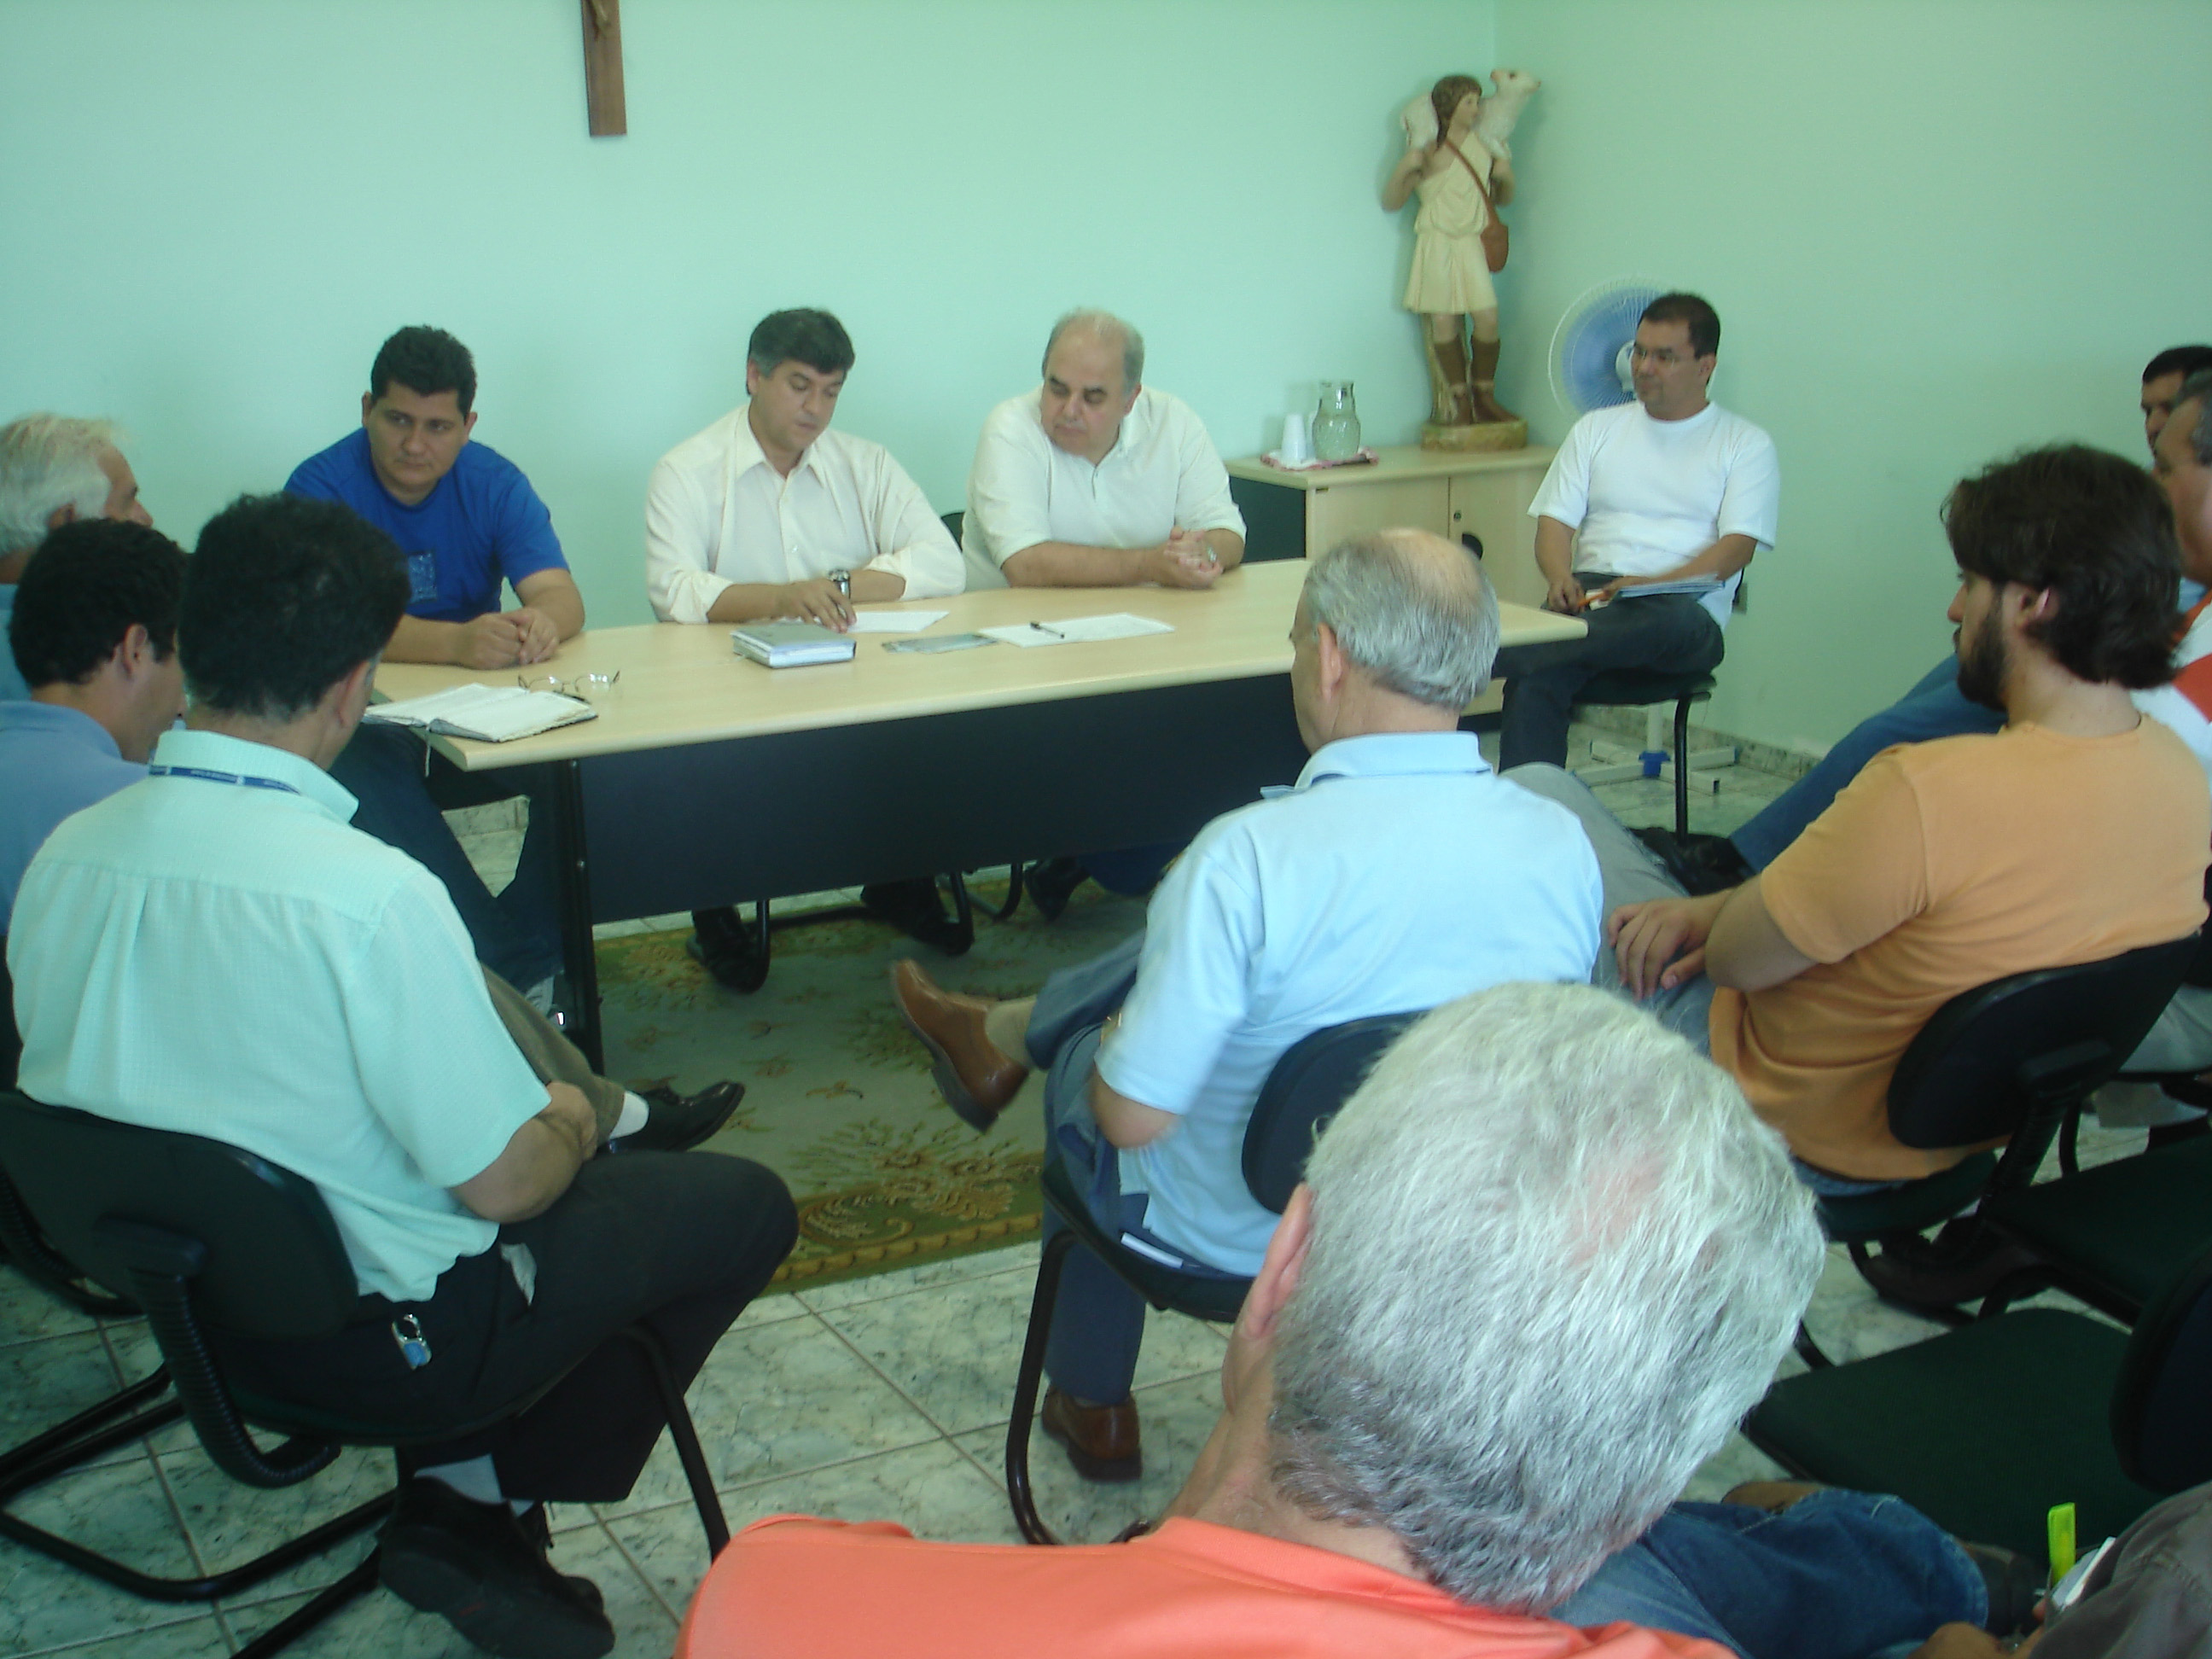 O encontro foi realizado na Comunidade Bom Pastor, em Taubat<a style='float:right;color:#ccc' href='https://www3.al.sp.gov.br/repositorio/noticia/03-2008/pafonso2.jpg' target=_blank><i class='bi bi-zoom-in'></i> Clique para ver a imagem </a>